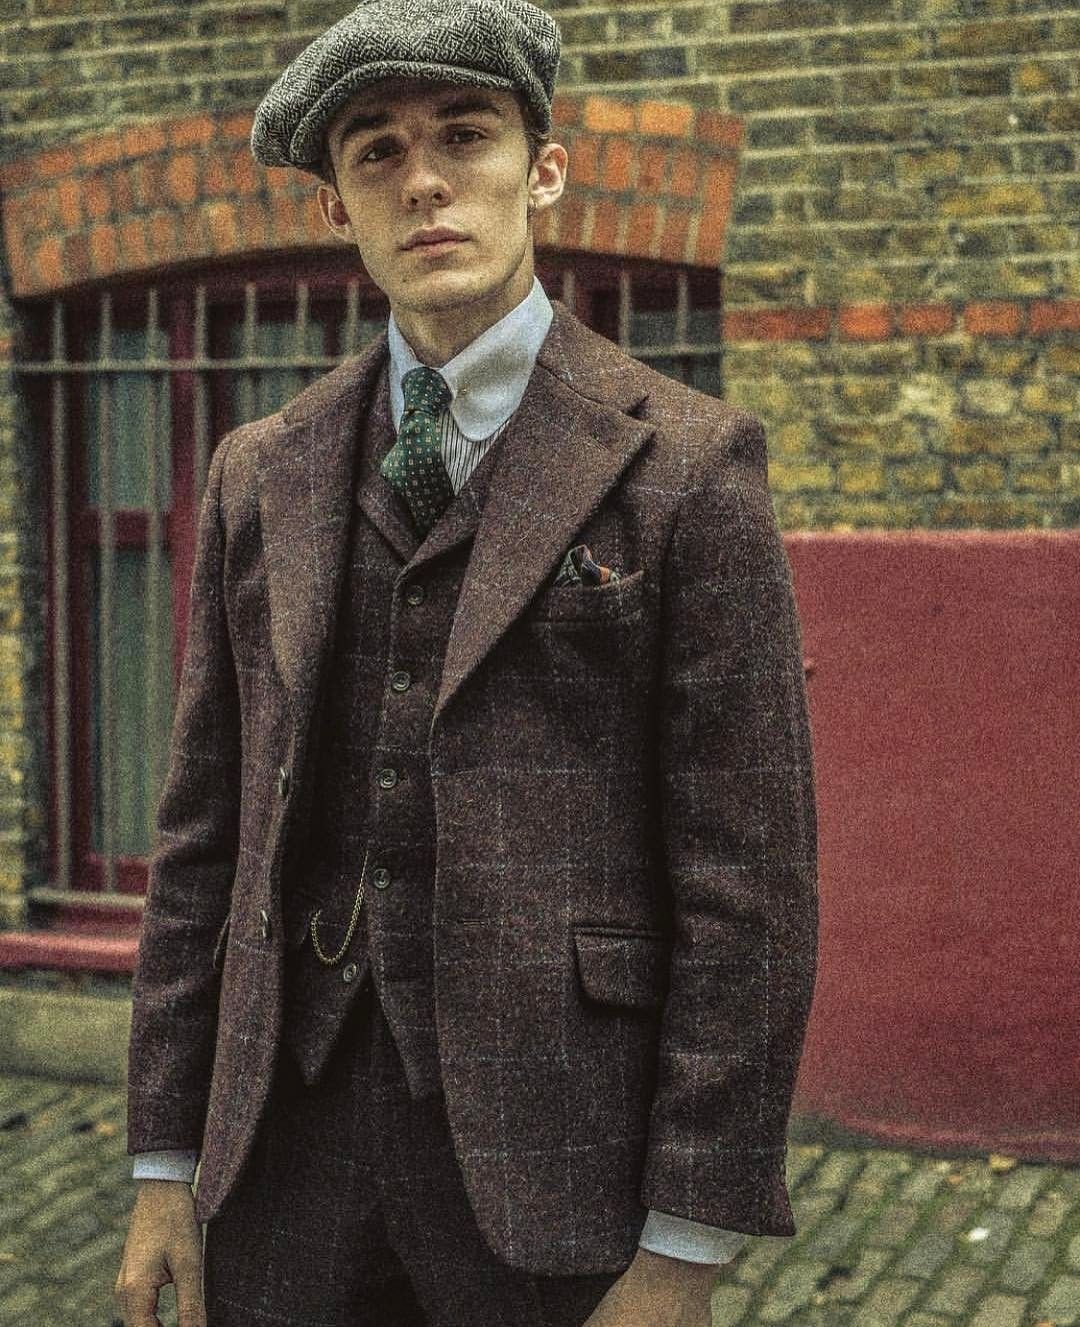 Хх мен. Thomas Farthing твид. Твидовый костюм 19 века Британии. Твидовый пиджак мужской Ирландия. Твидовый костюм 20 века мужской.